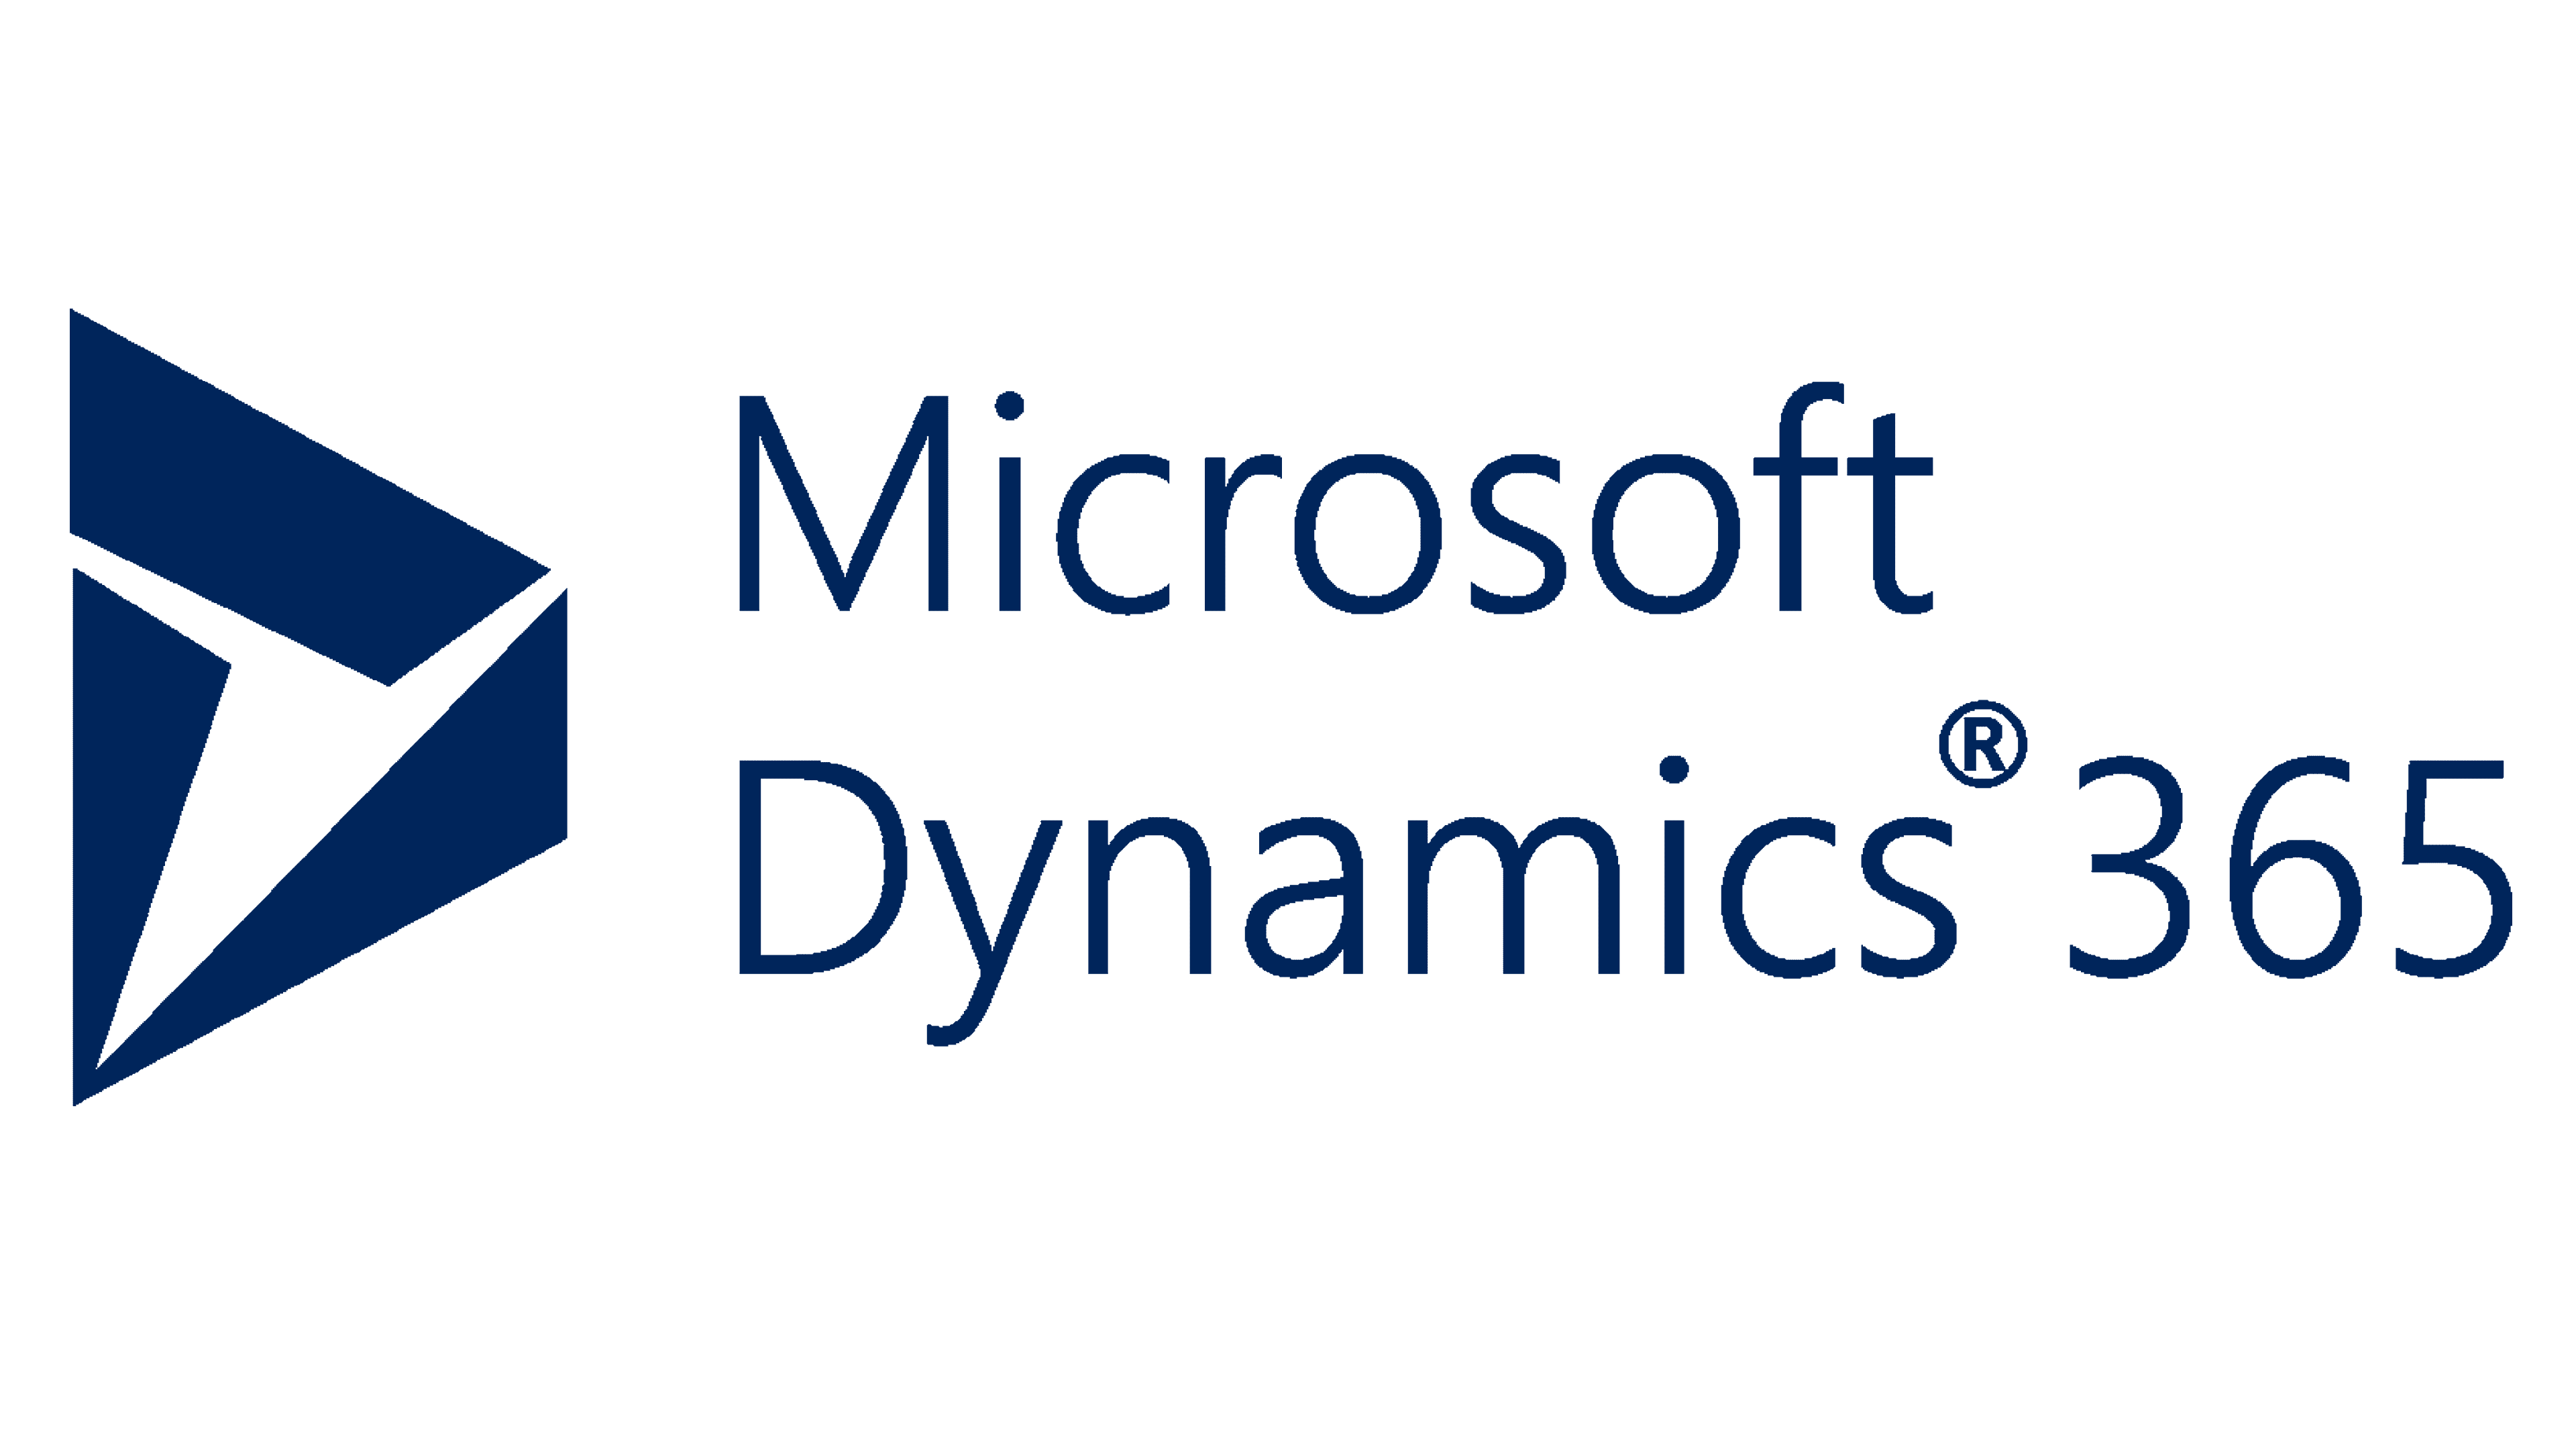 Dynamics 365 Logo 2016.png